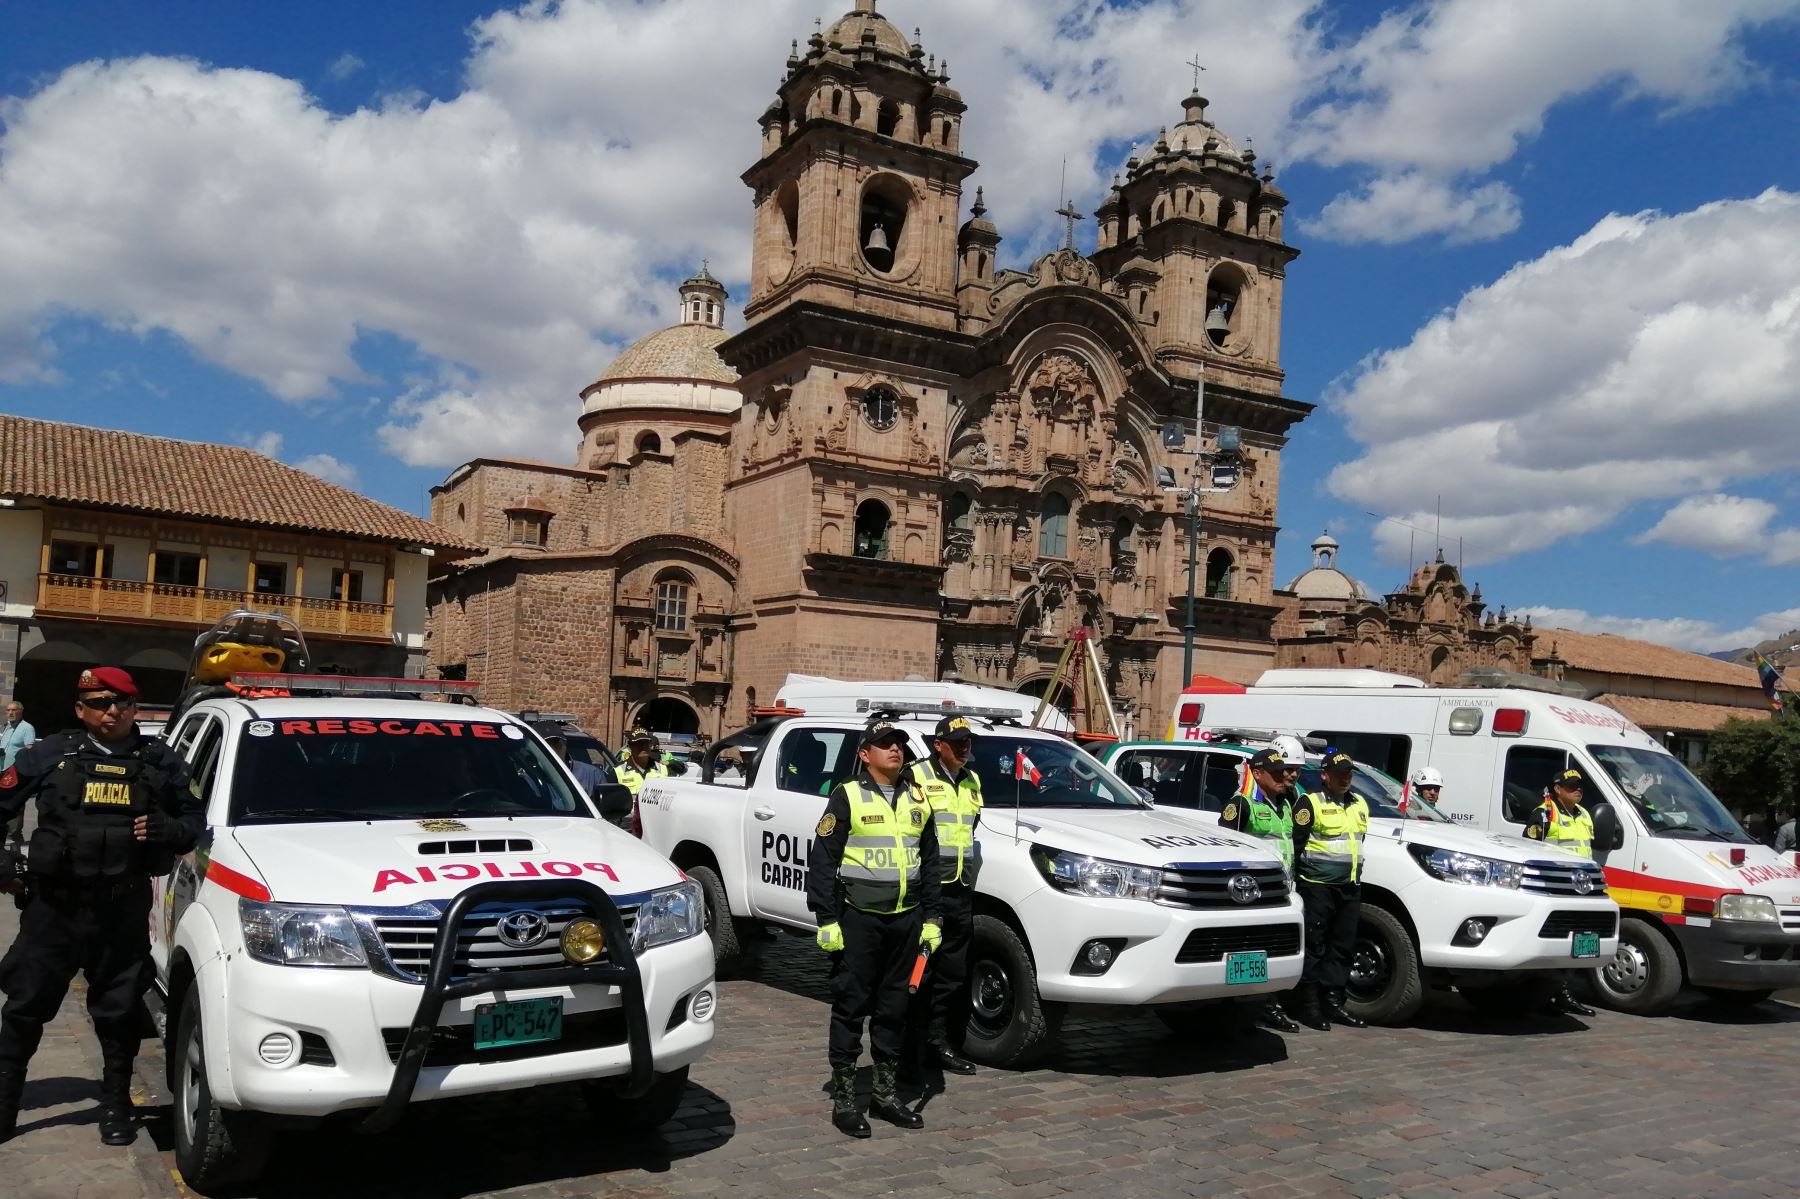 Policía de Cusco reforzará la seguridad durante escenificación del Inti Raymi para proteger a turistas y cusqueños. ANDINA/Percy Hurtado